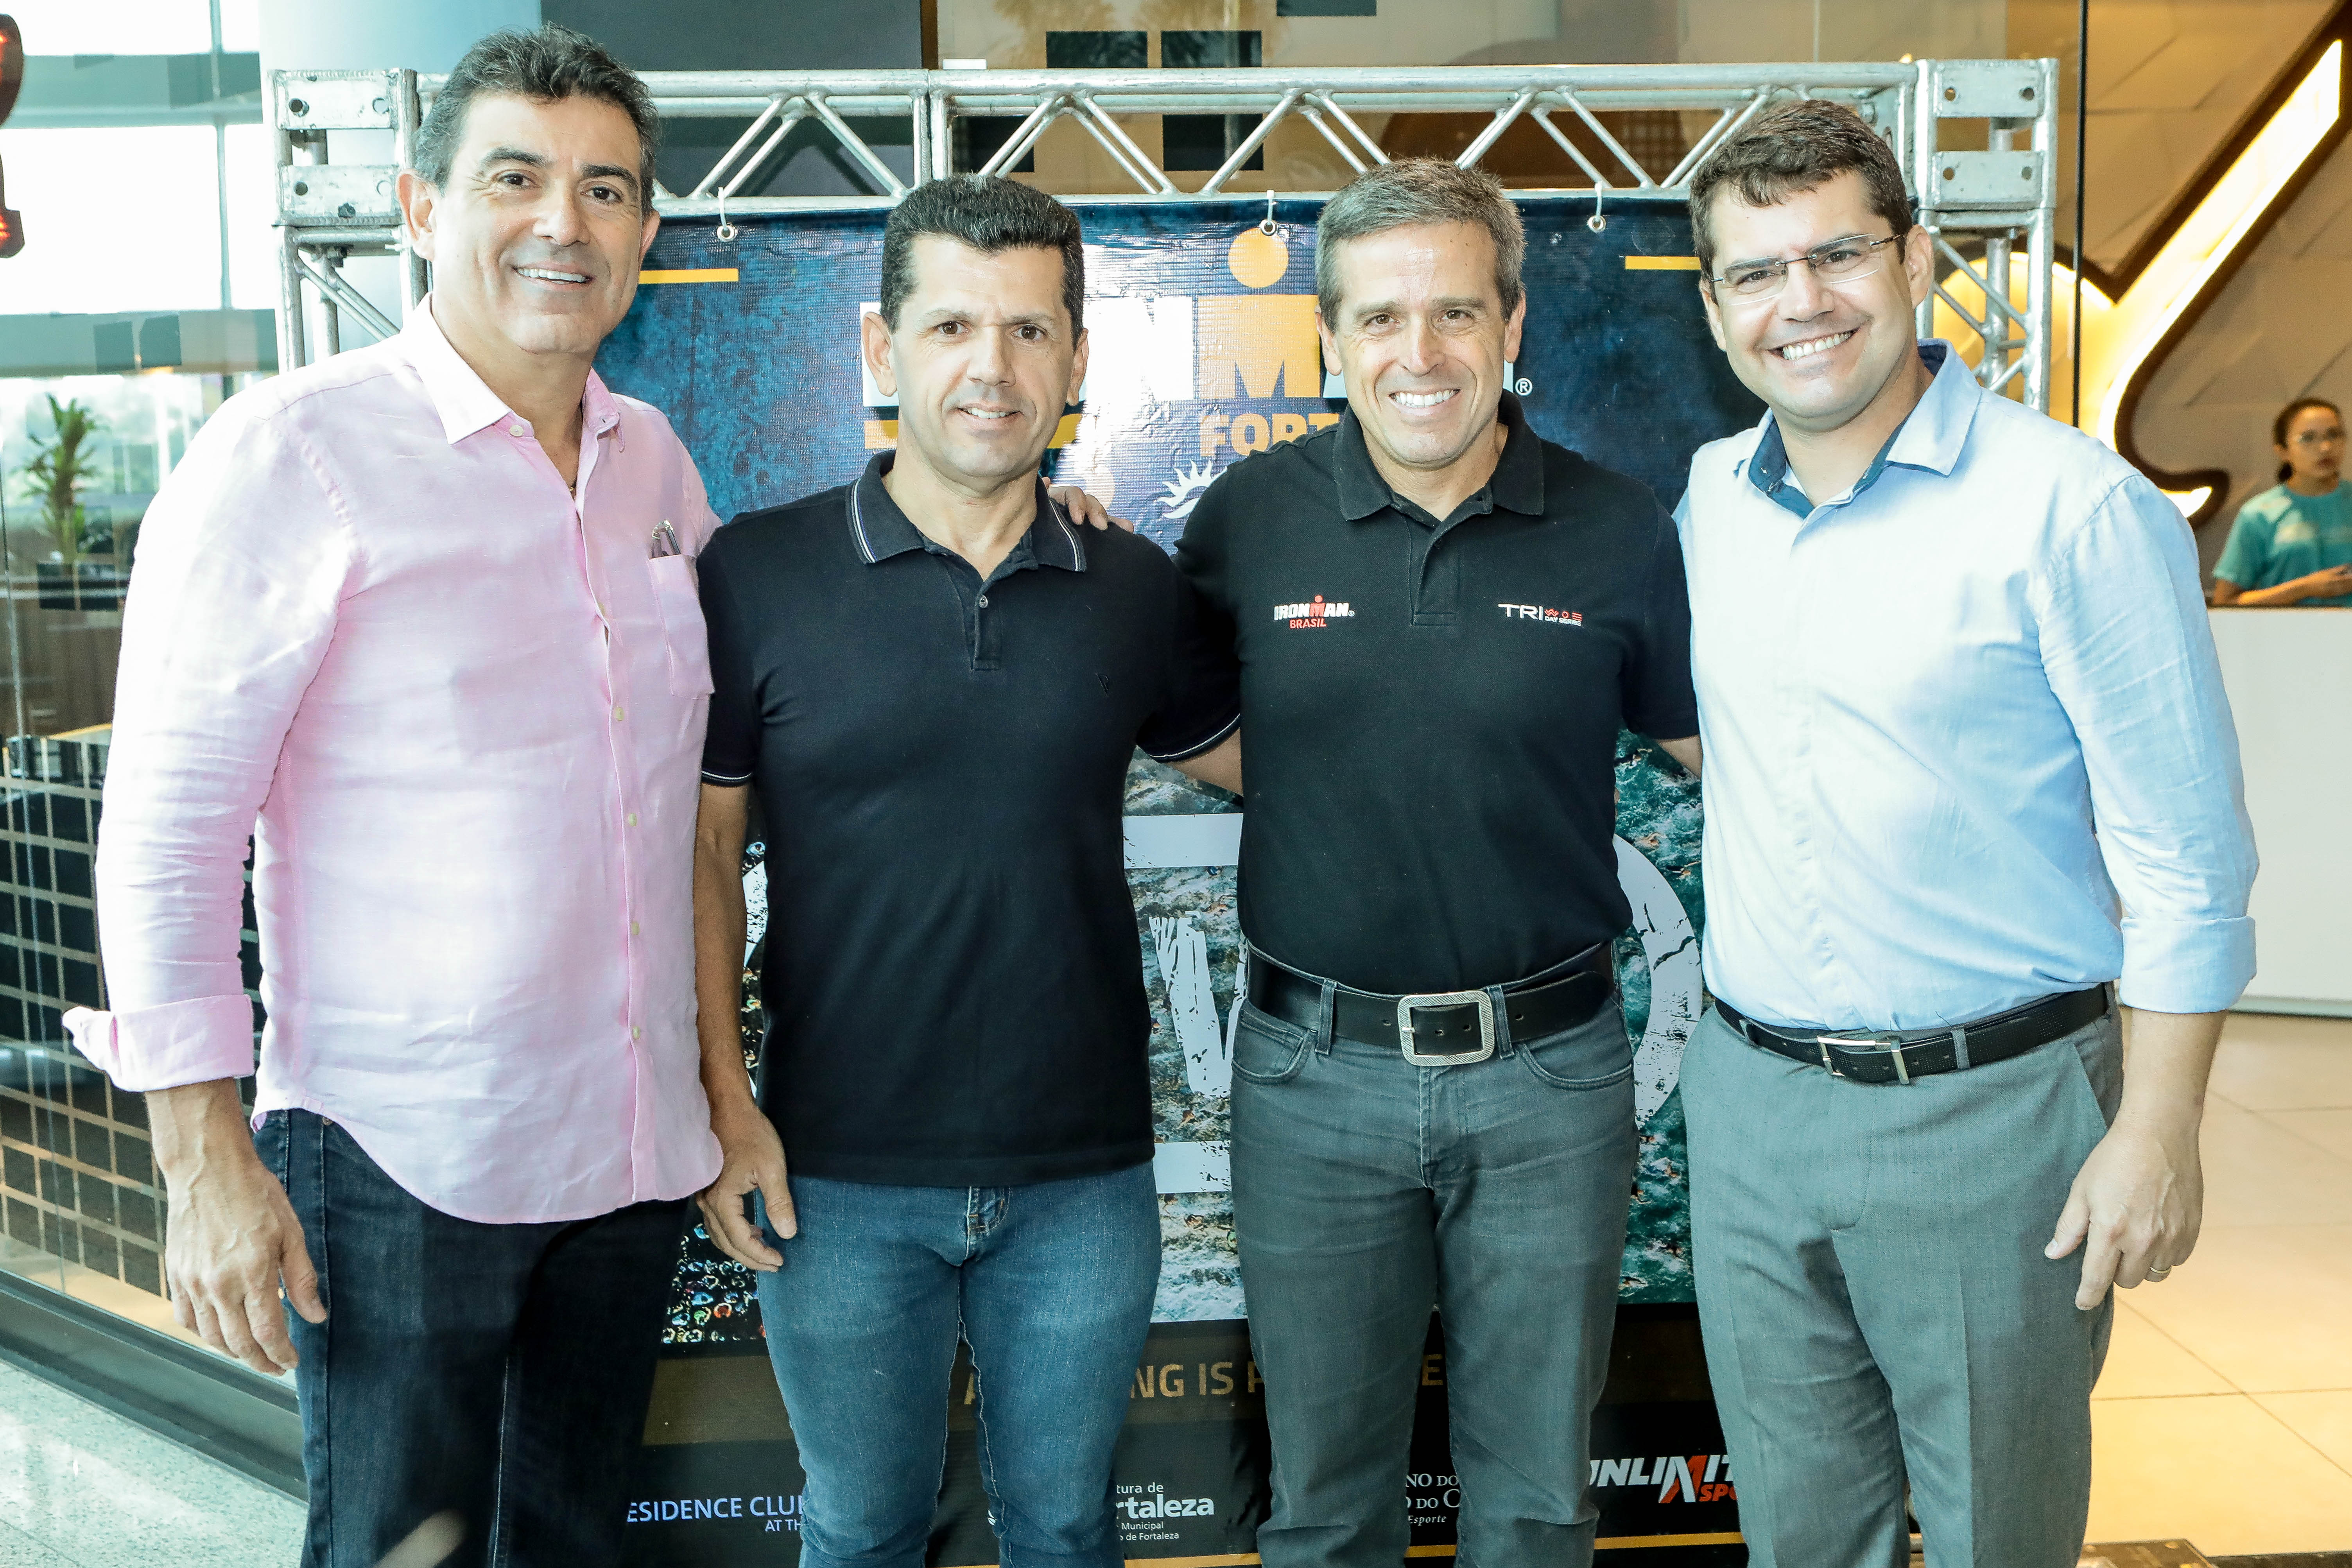 Realizador da prova, Carlos Galvão lança oficialmente o Ironman Fortaleza 2020